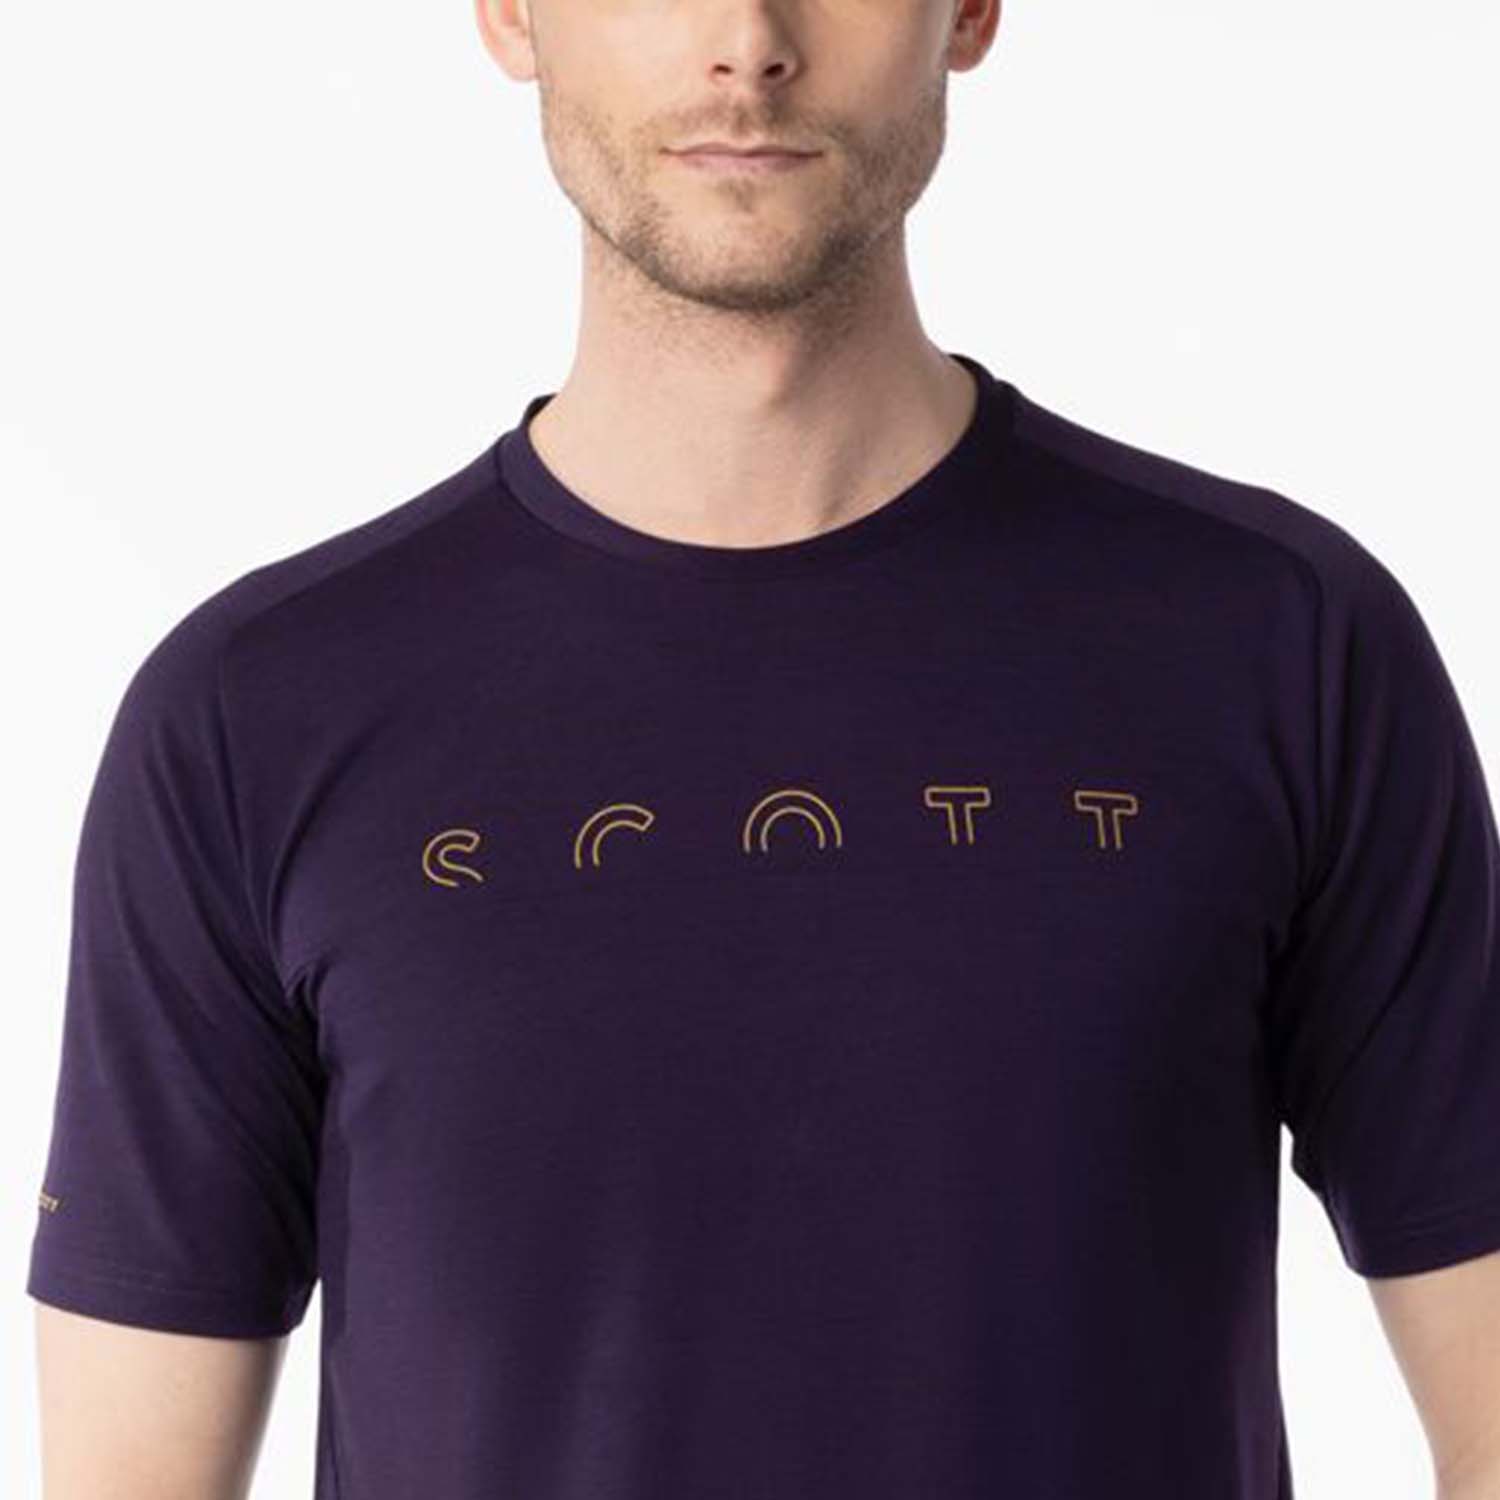 Scott Defined T-Shirt - Cyber Purple